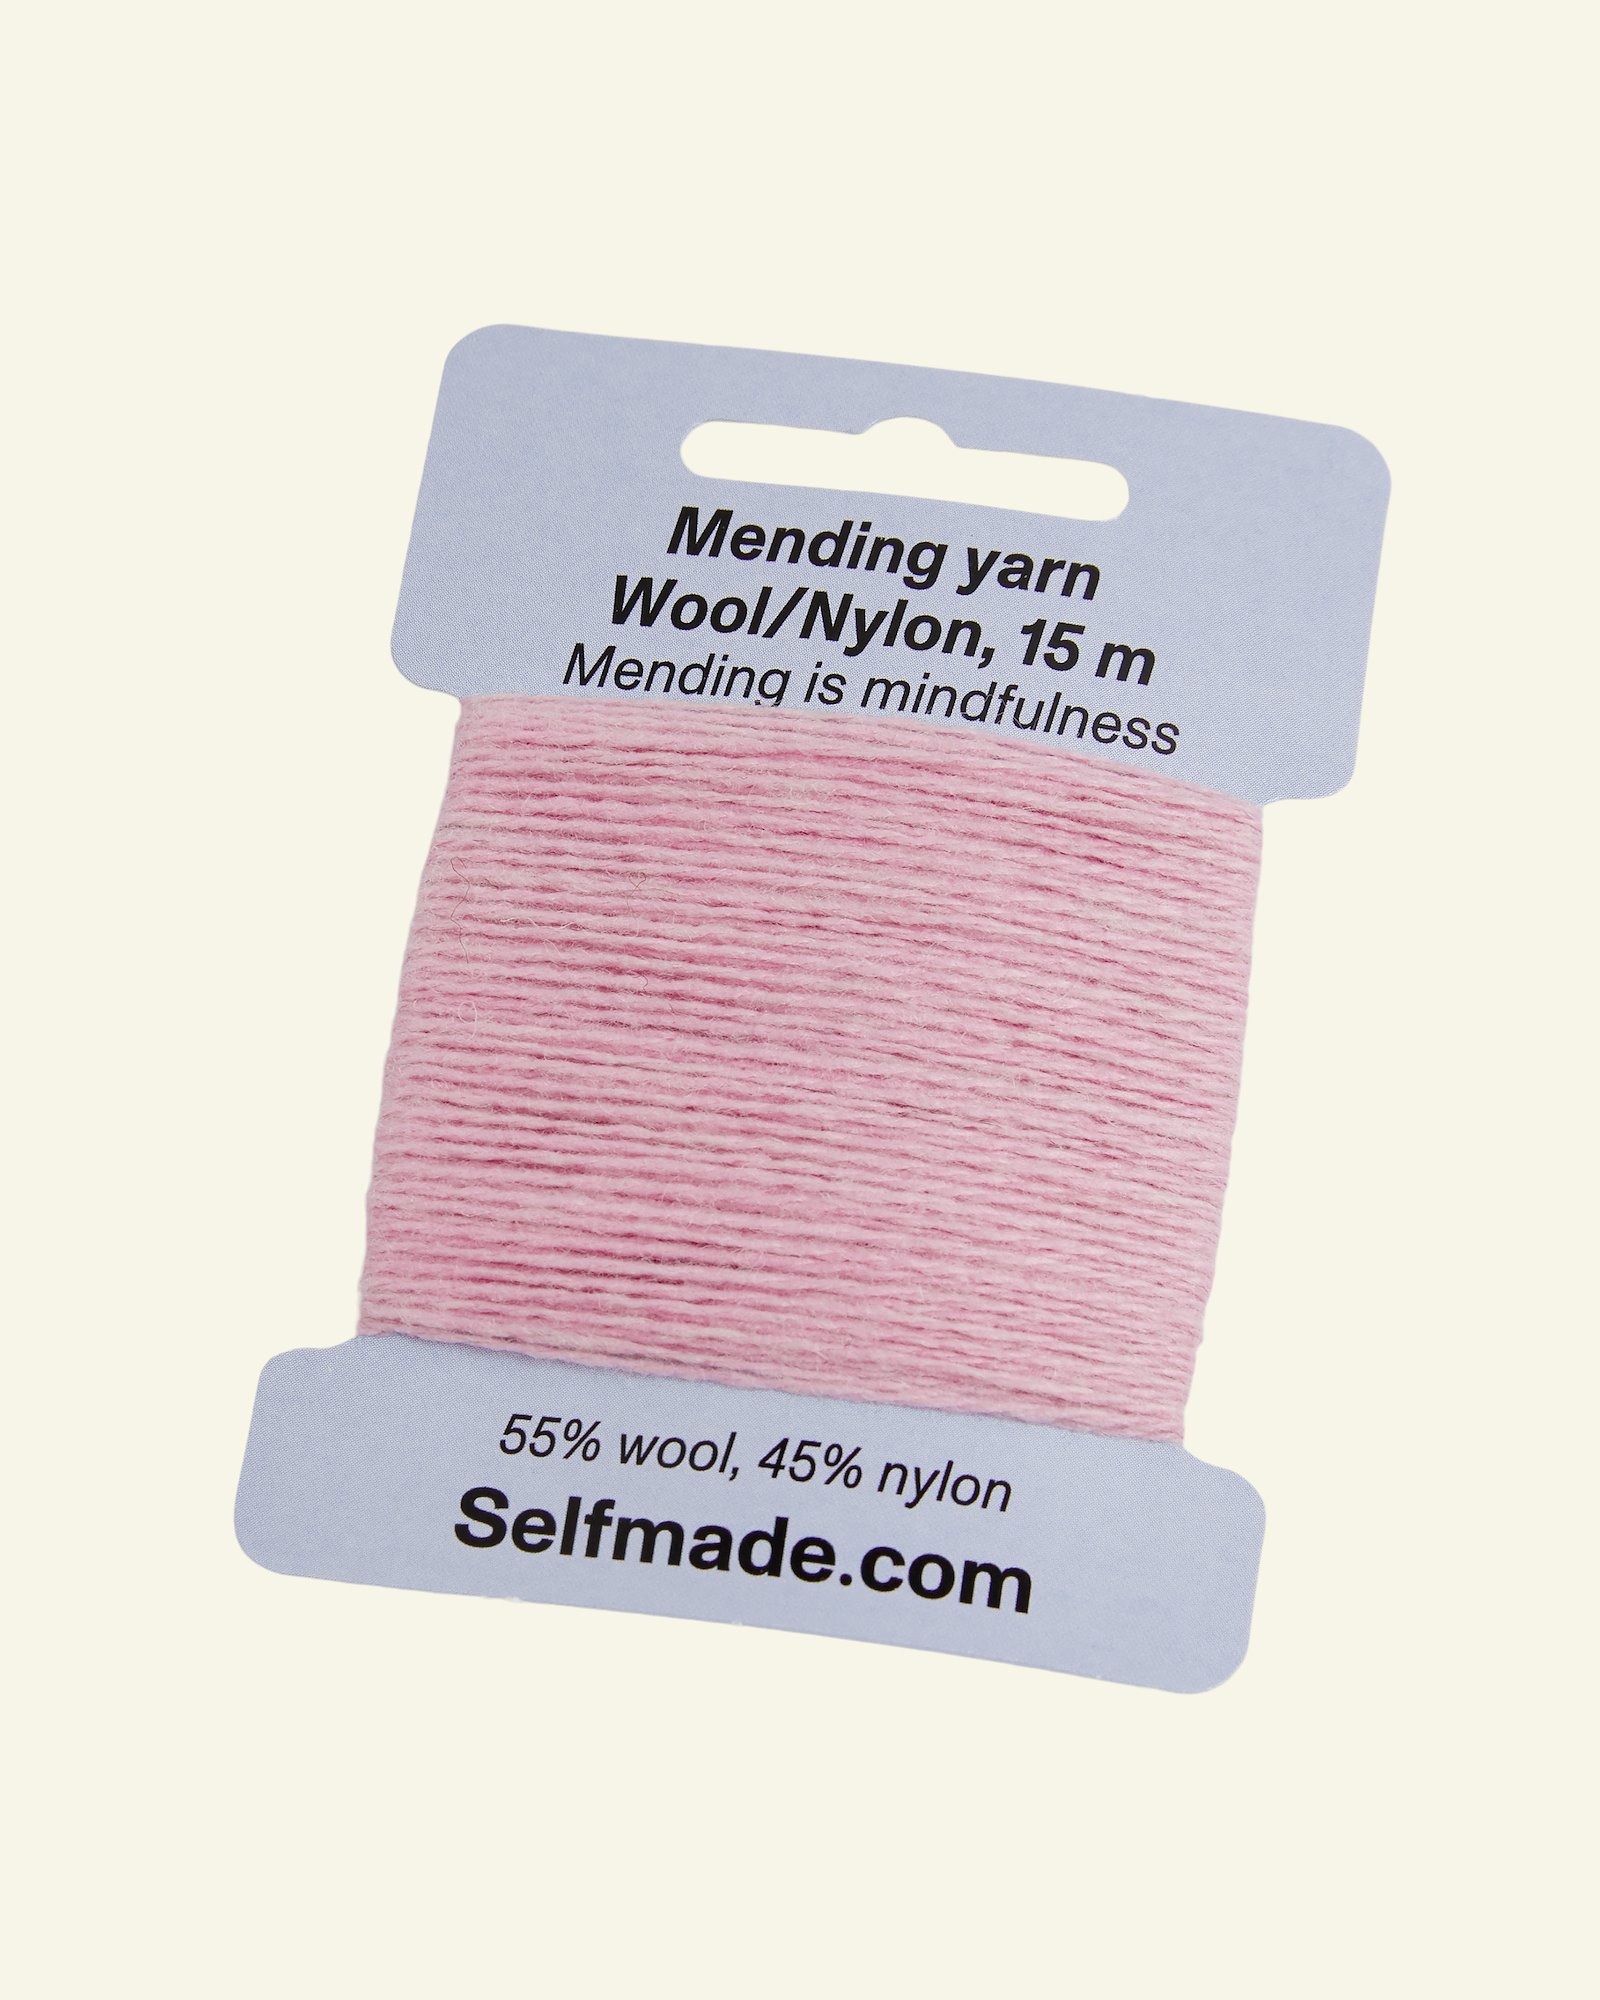 Mending yarn wool/nylon dark pink 15m 35503_pack